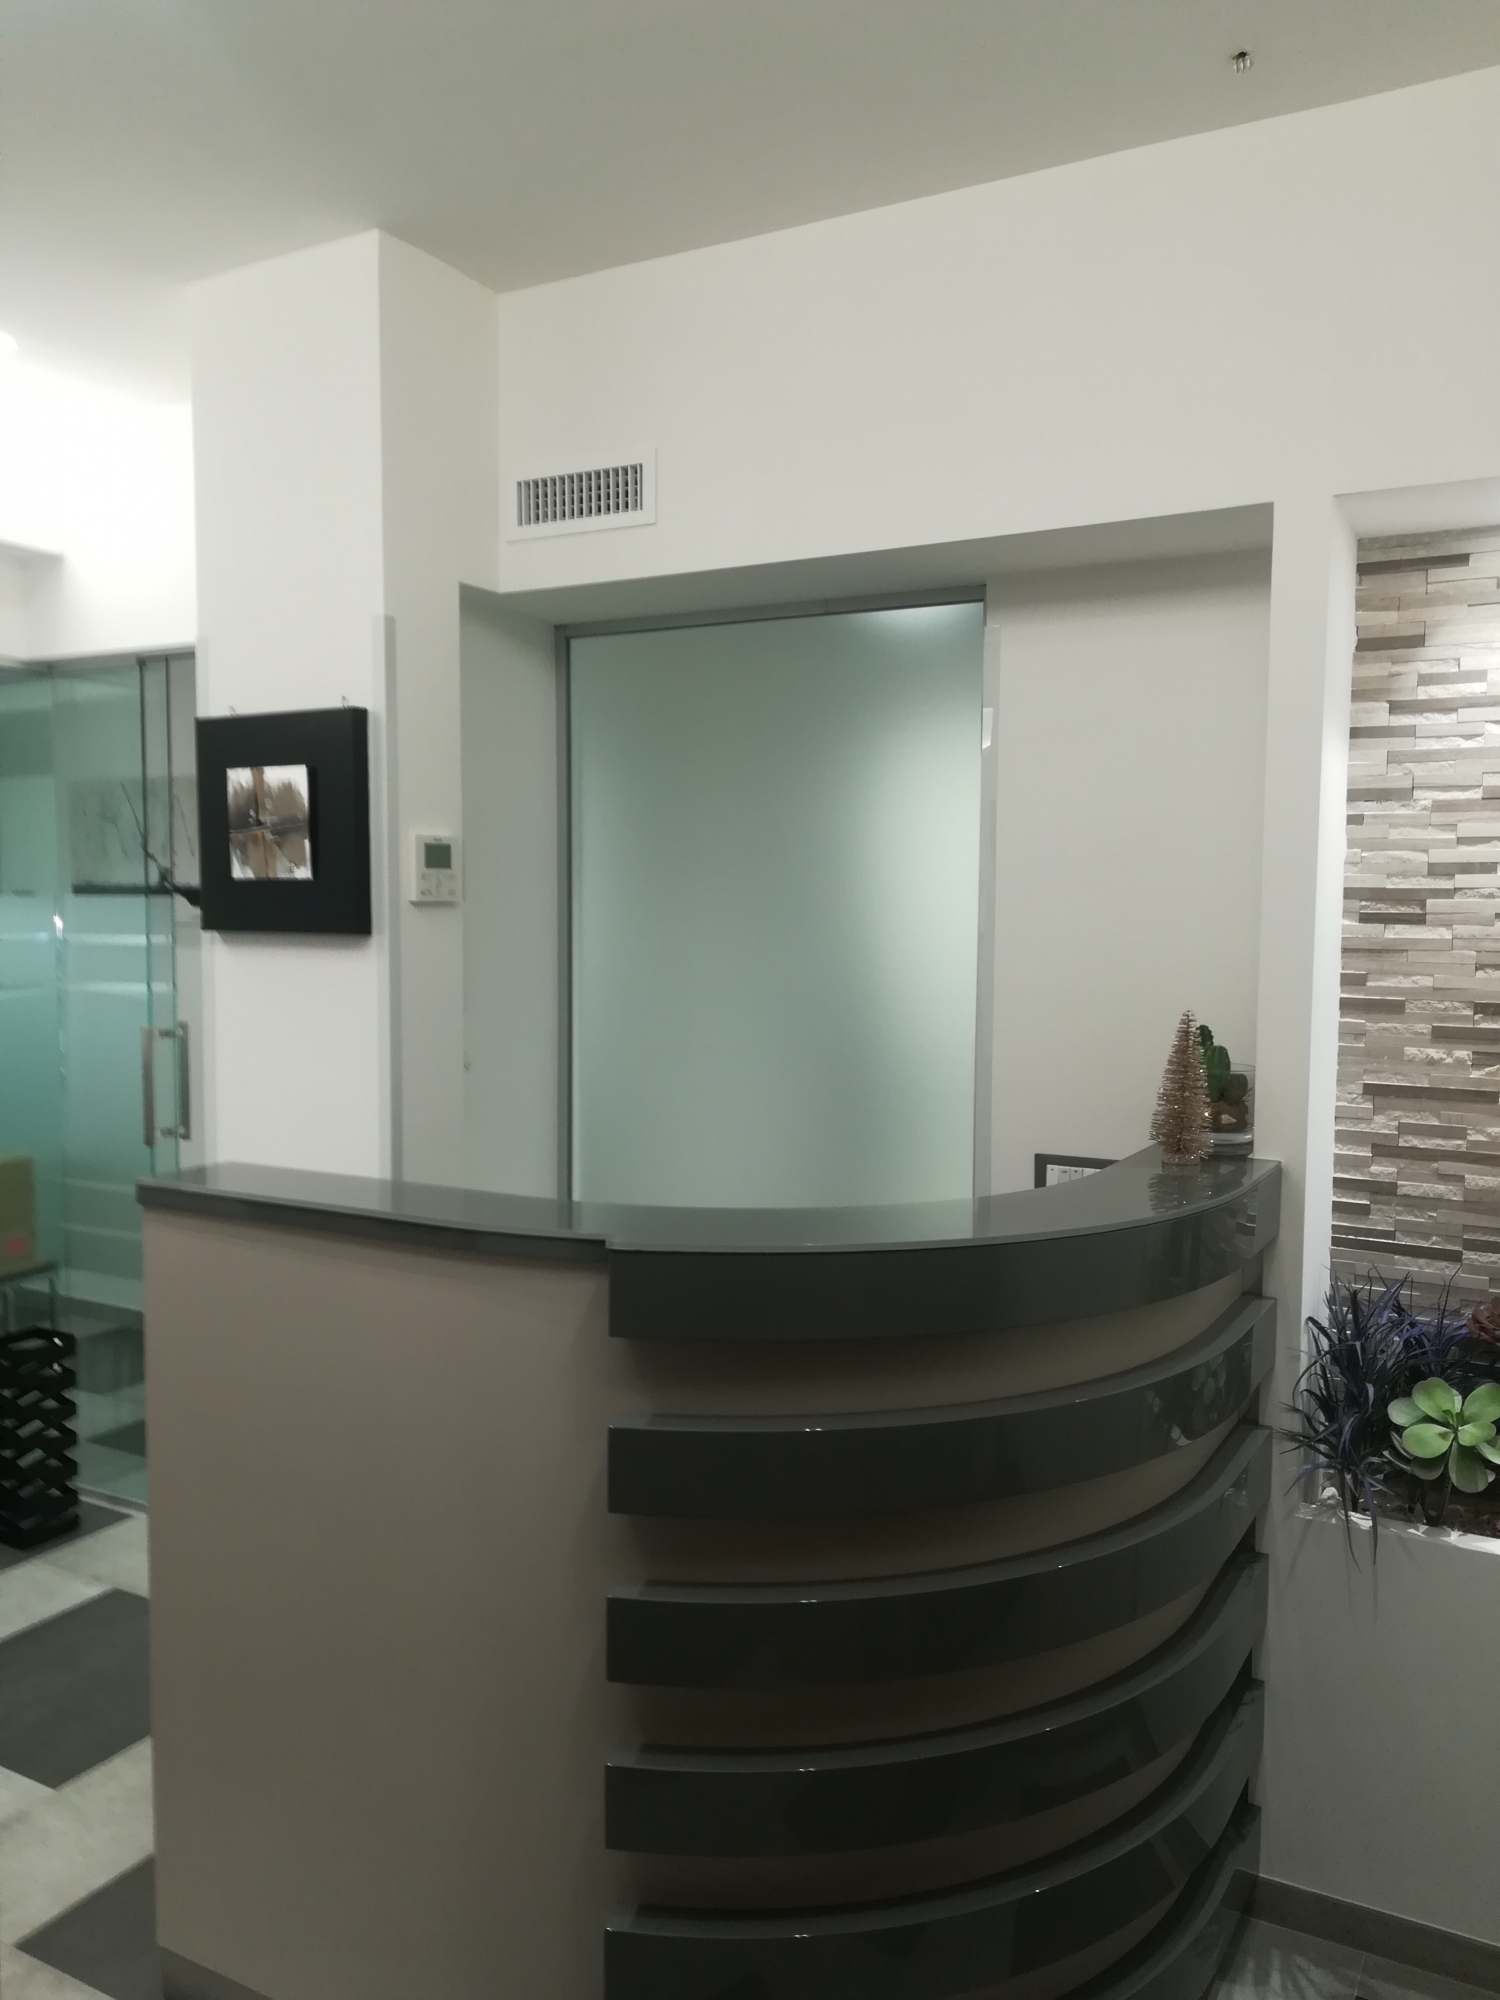 Ingresso studio dentistico - progettazione e ristrutturazione - Architetto - bancone reception